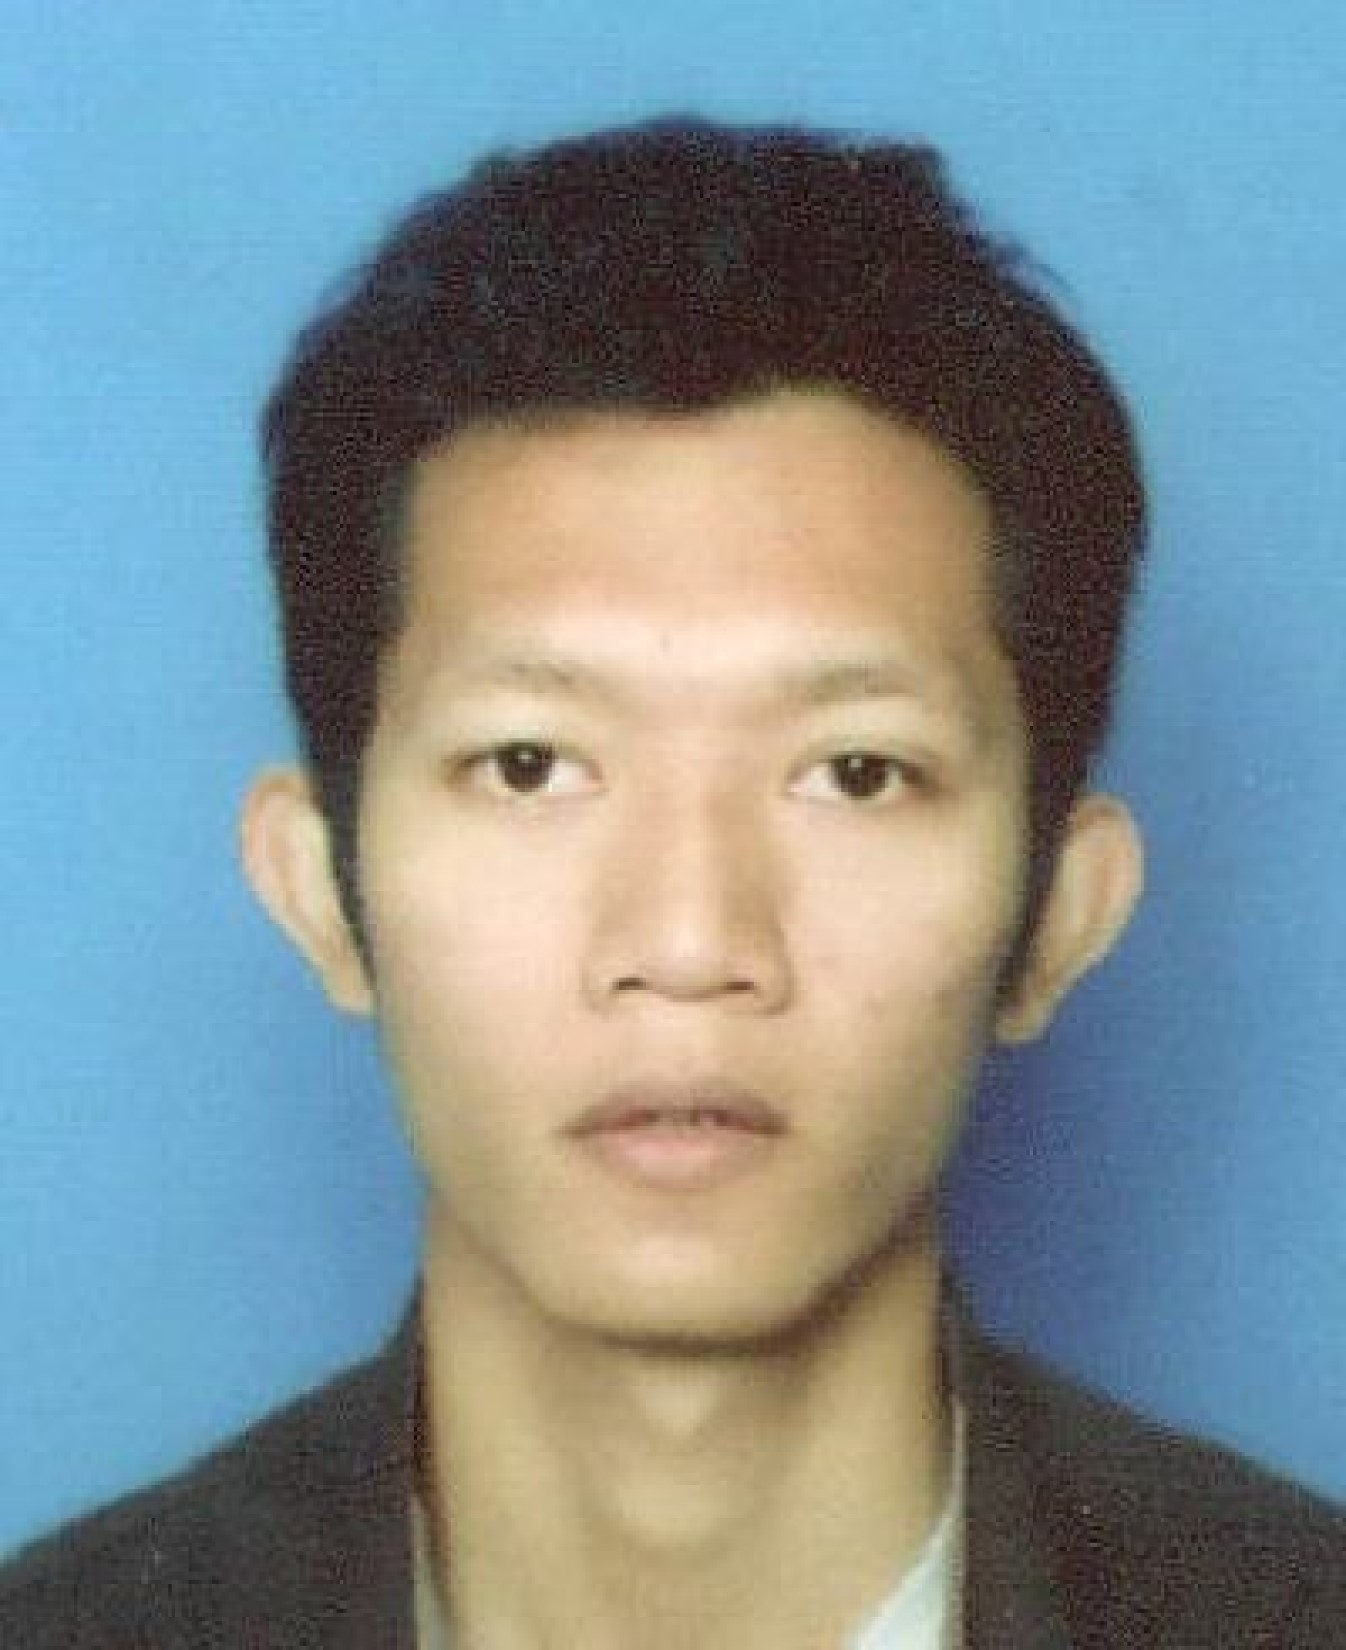 Mohd Jefri bin Samaroon